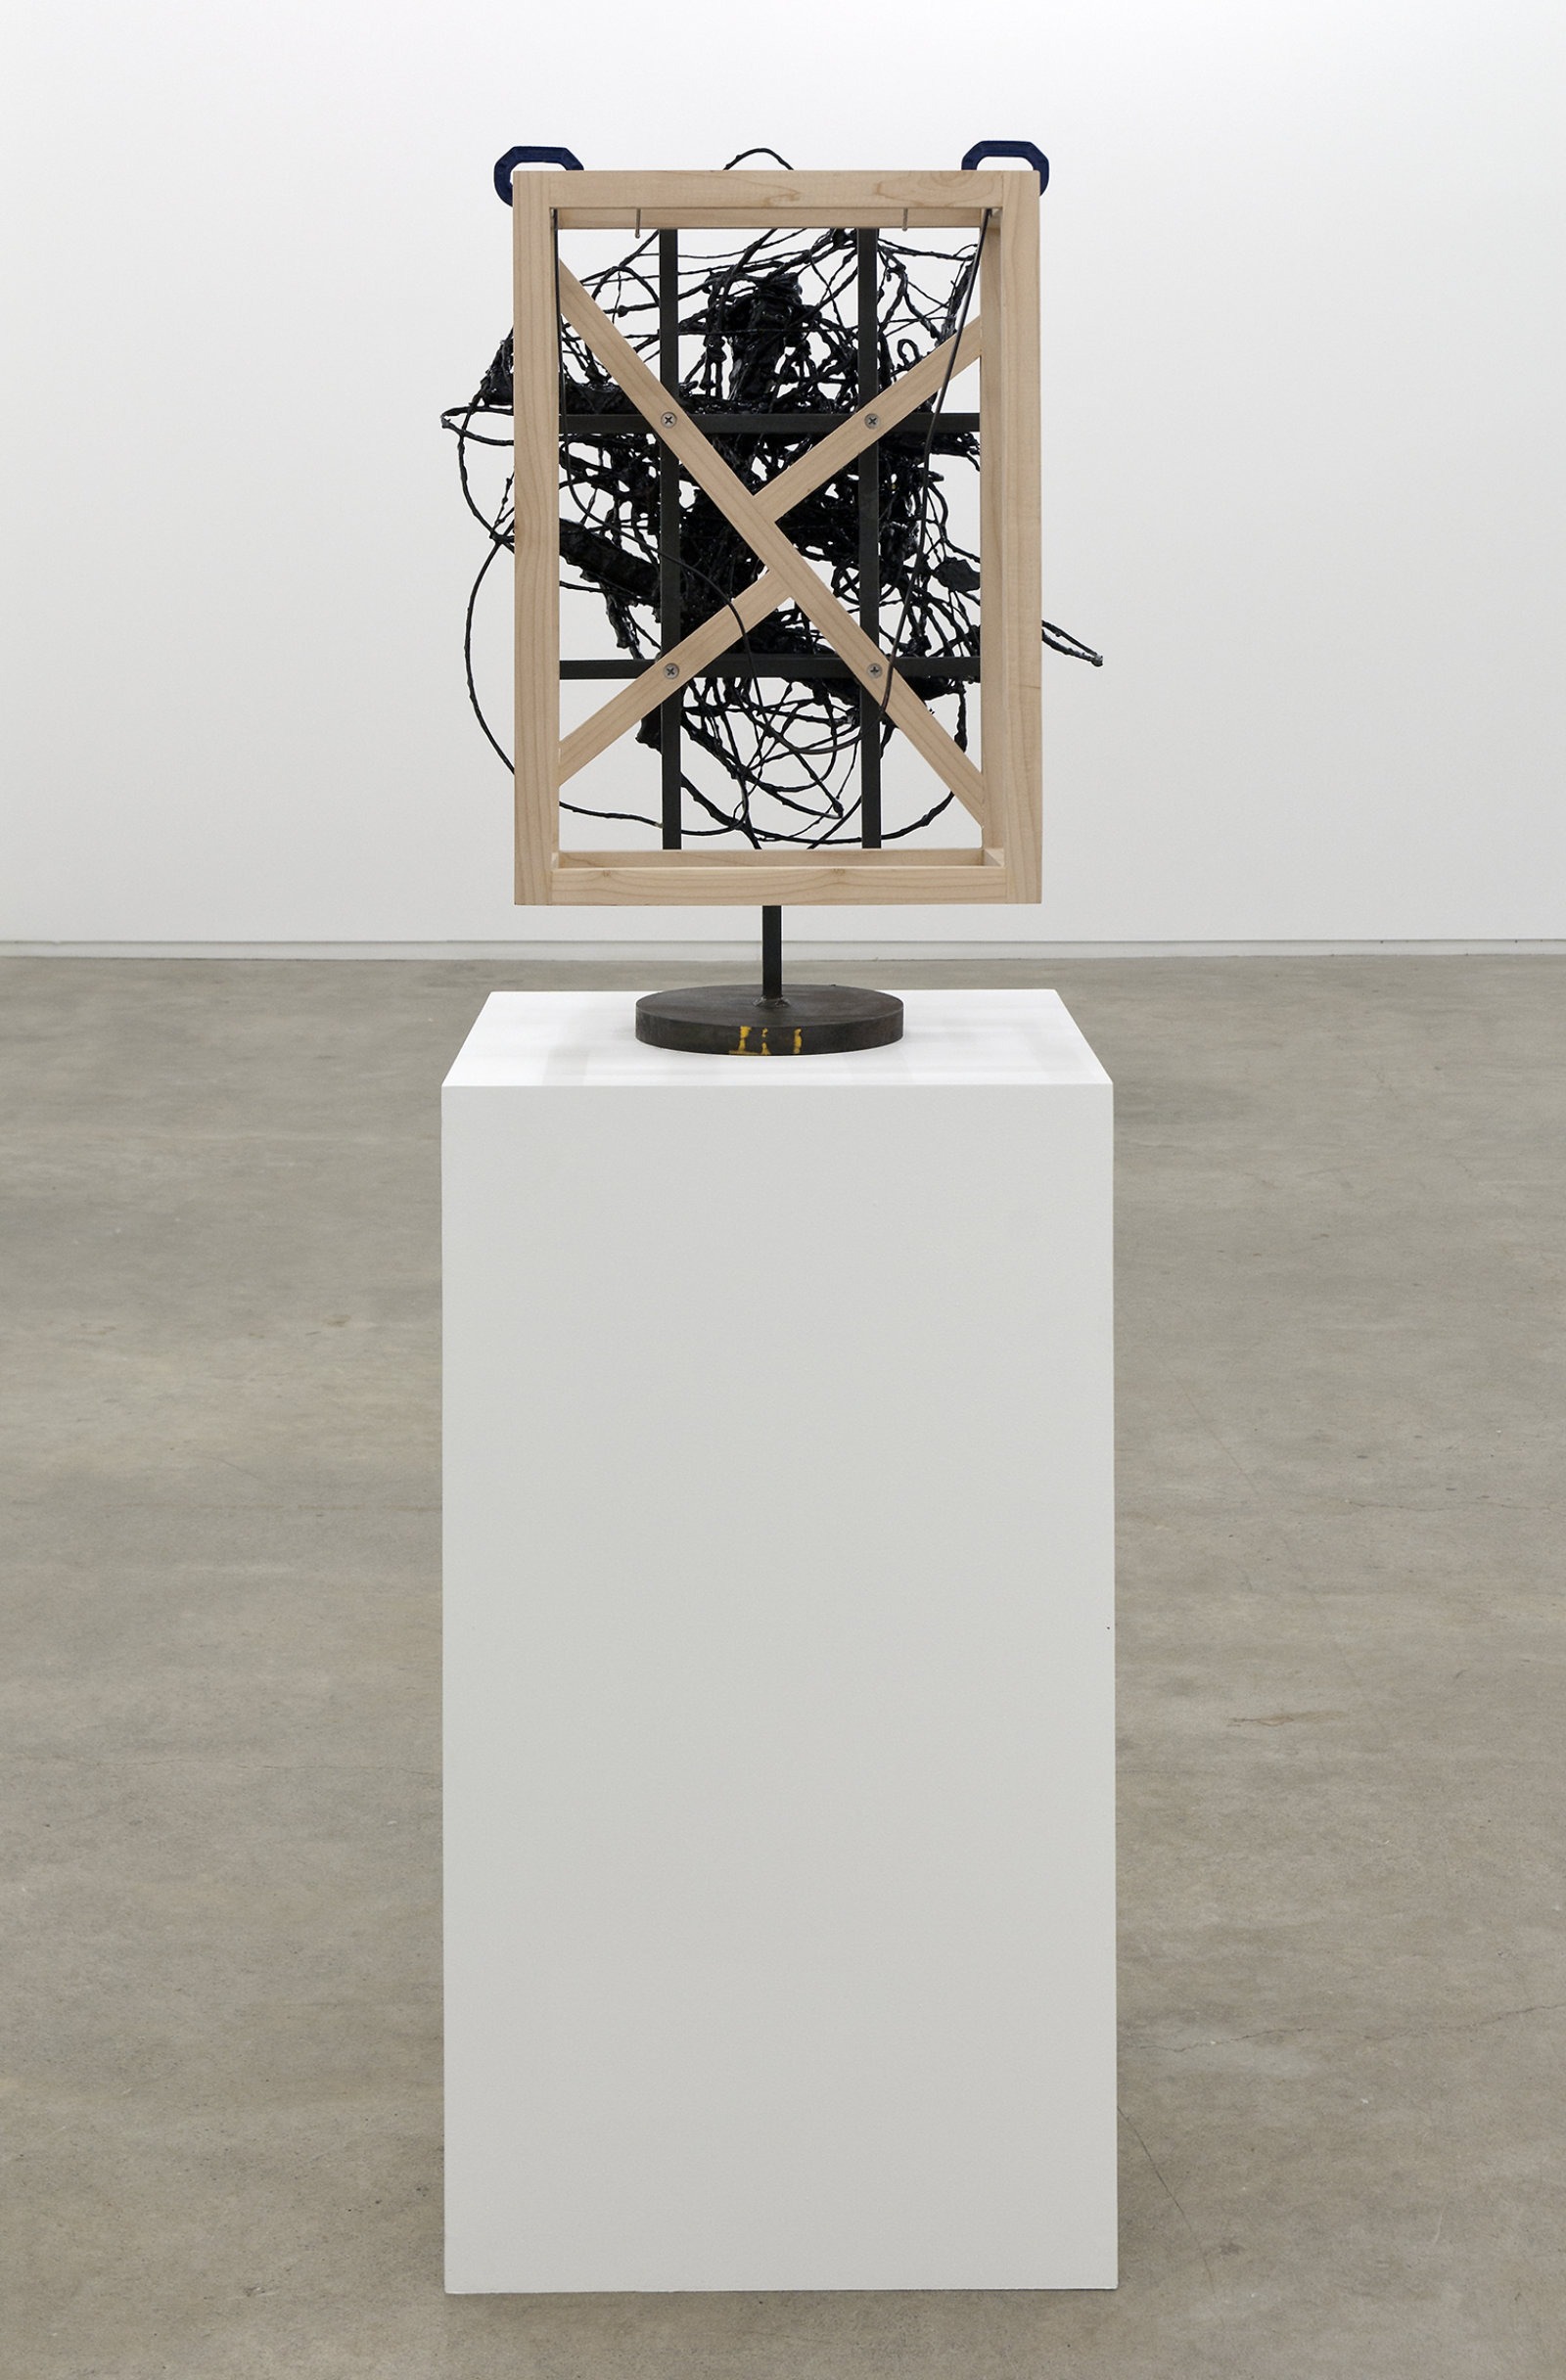 Damian Moppett, Untitled, 2010, steel, wood, wire, plaster, enamel, clamps, 27 x 18 x 18 in. (69 x 46 x 44 cm)